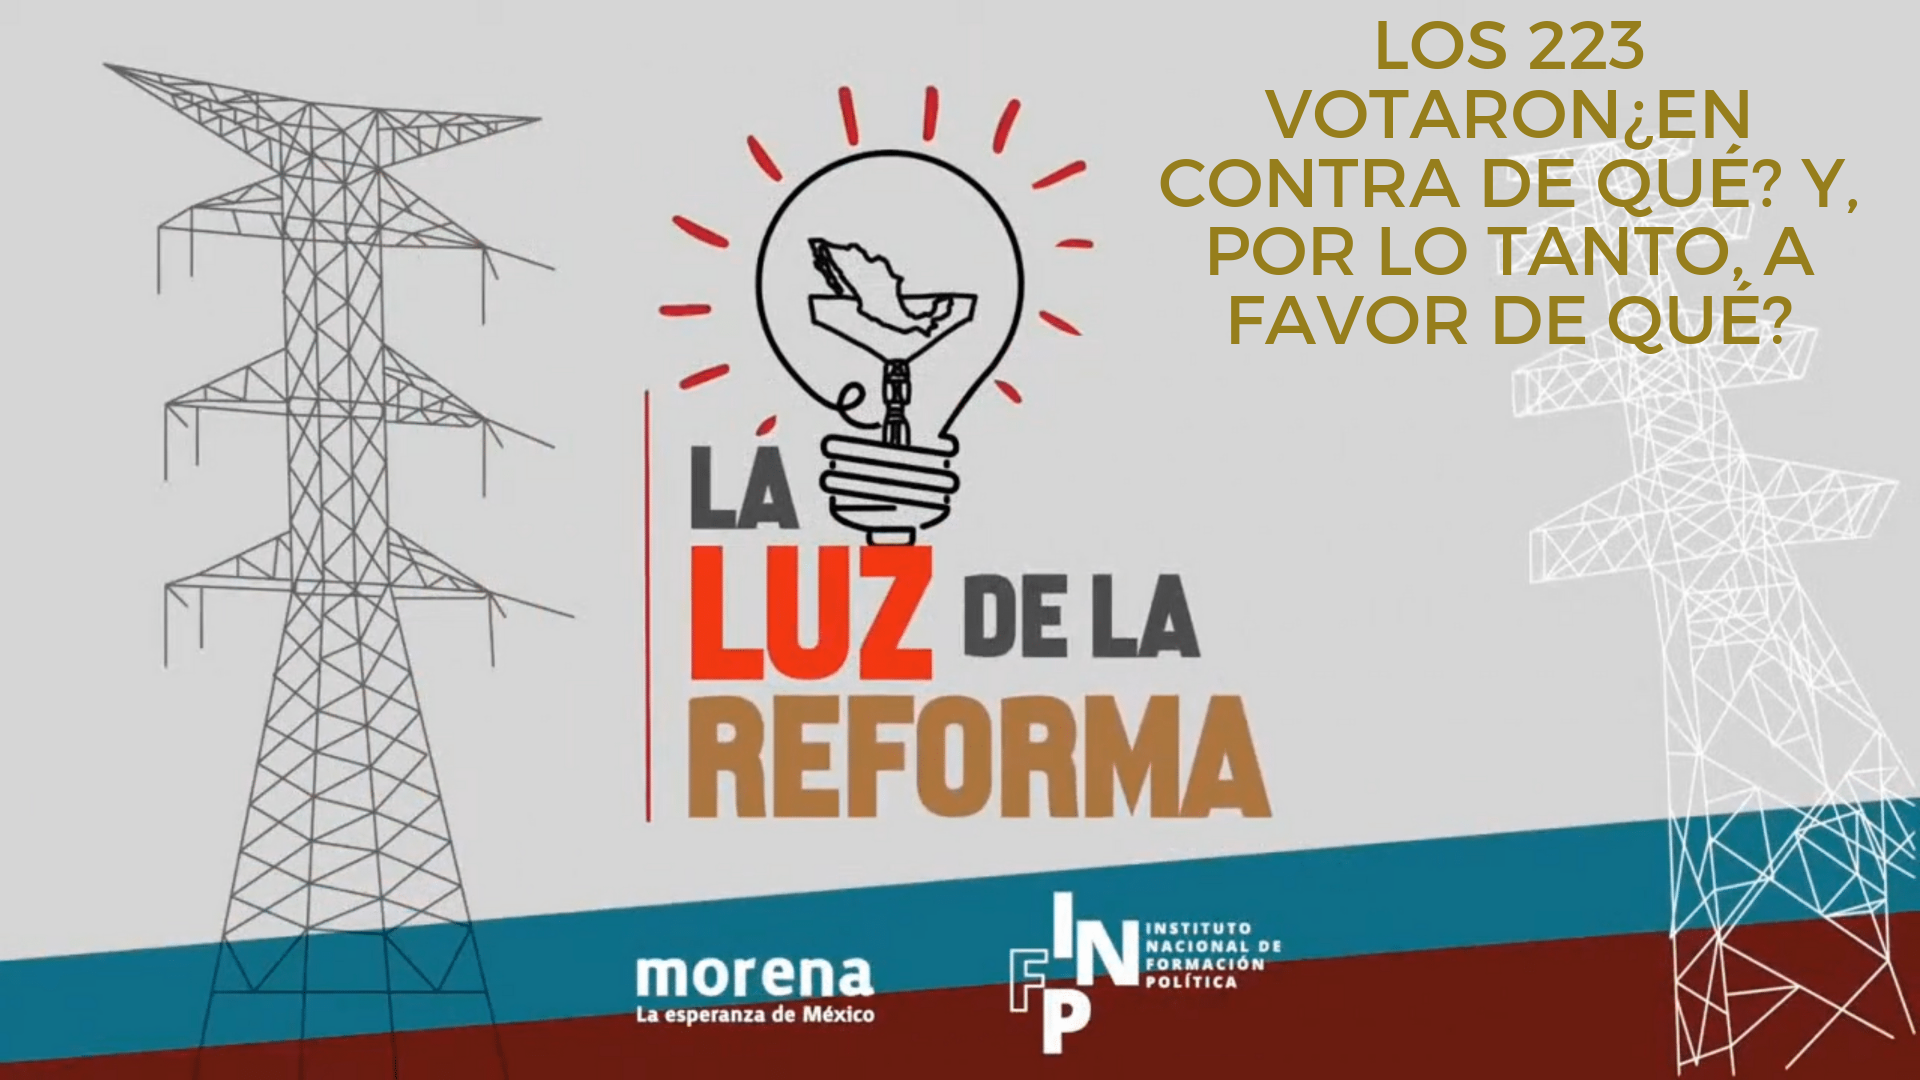 La Luz de la Reforma – Los 223 votaron¿en contra de qué? Y, por lo tanto, a favor de qué?